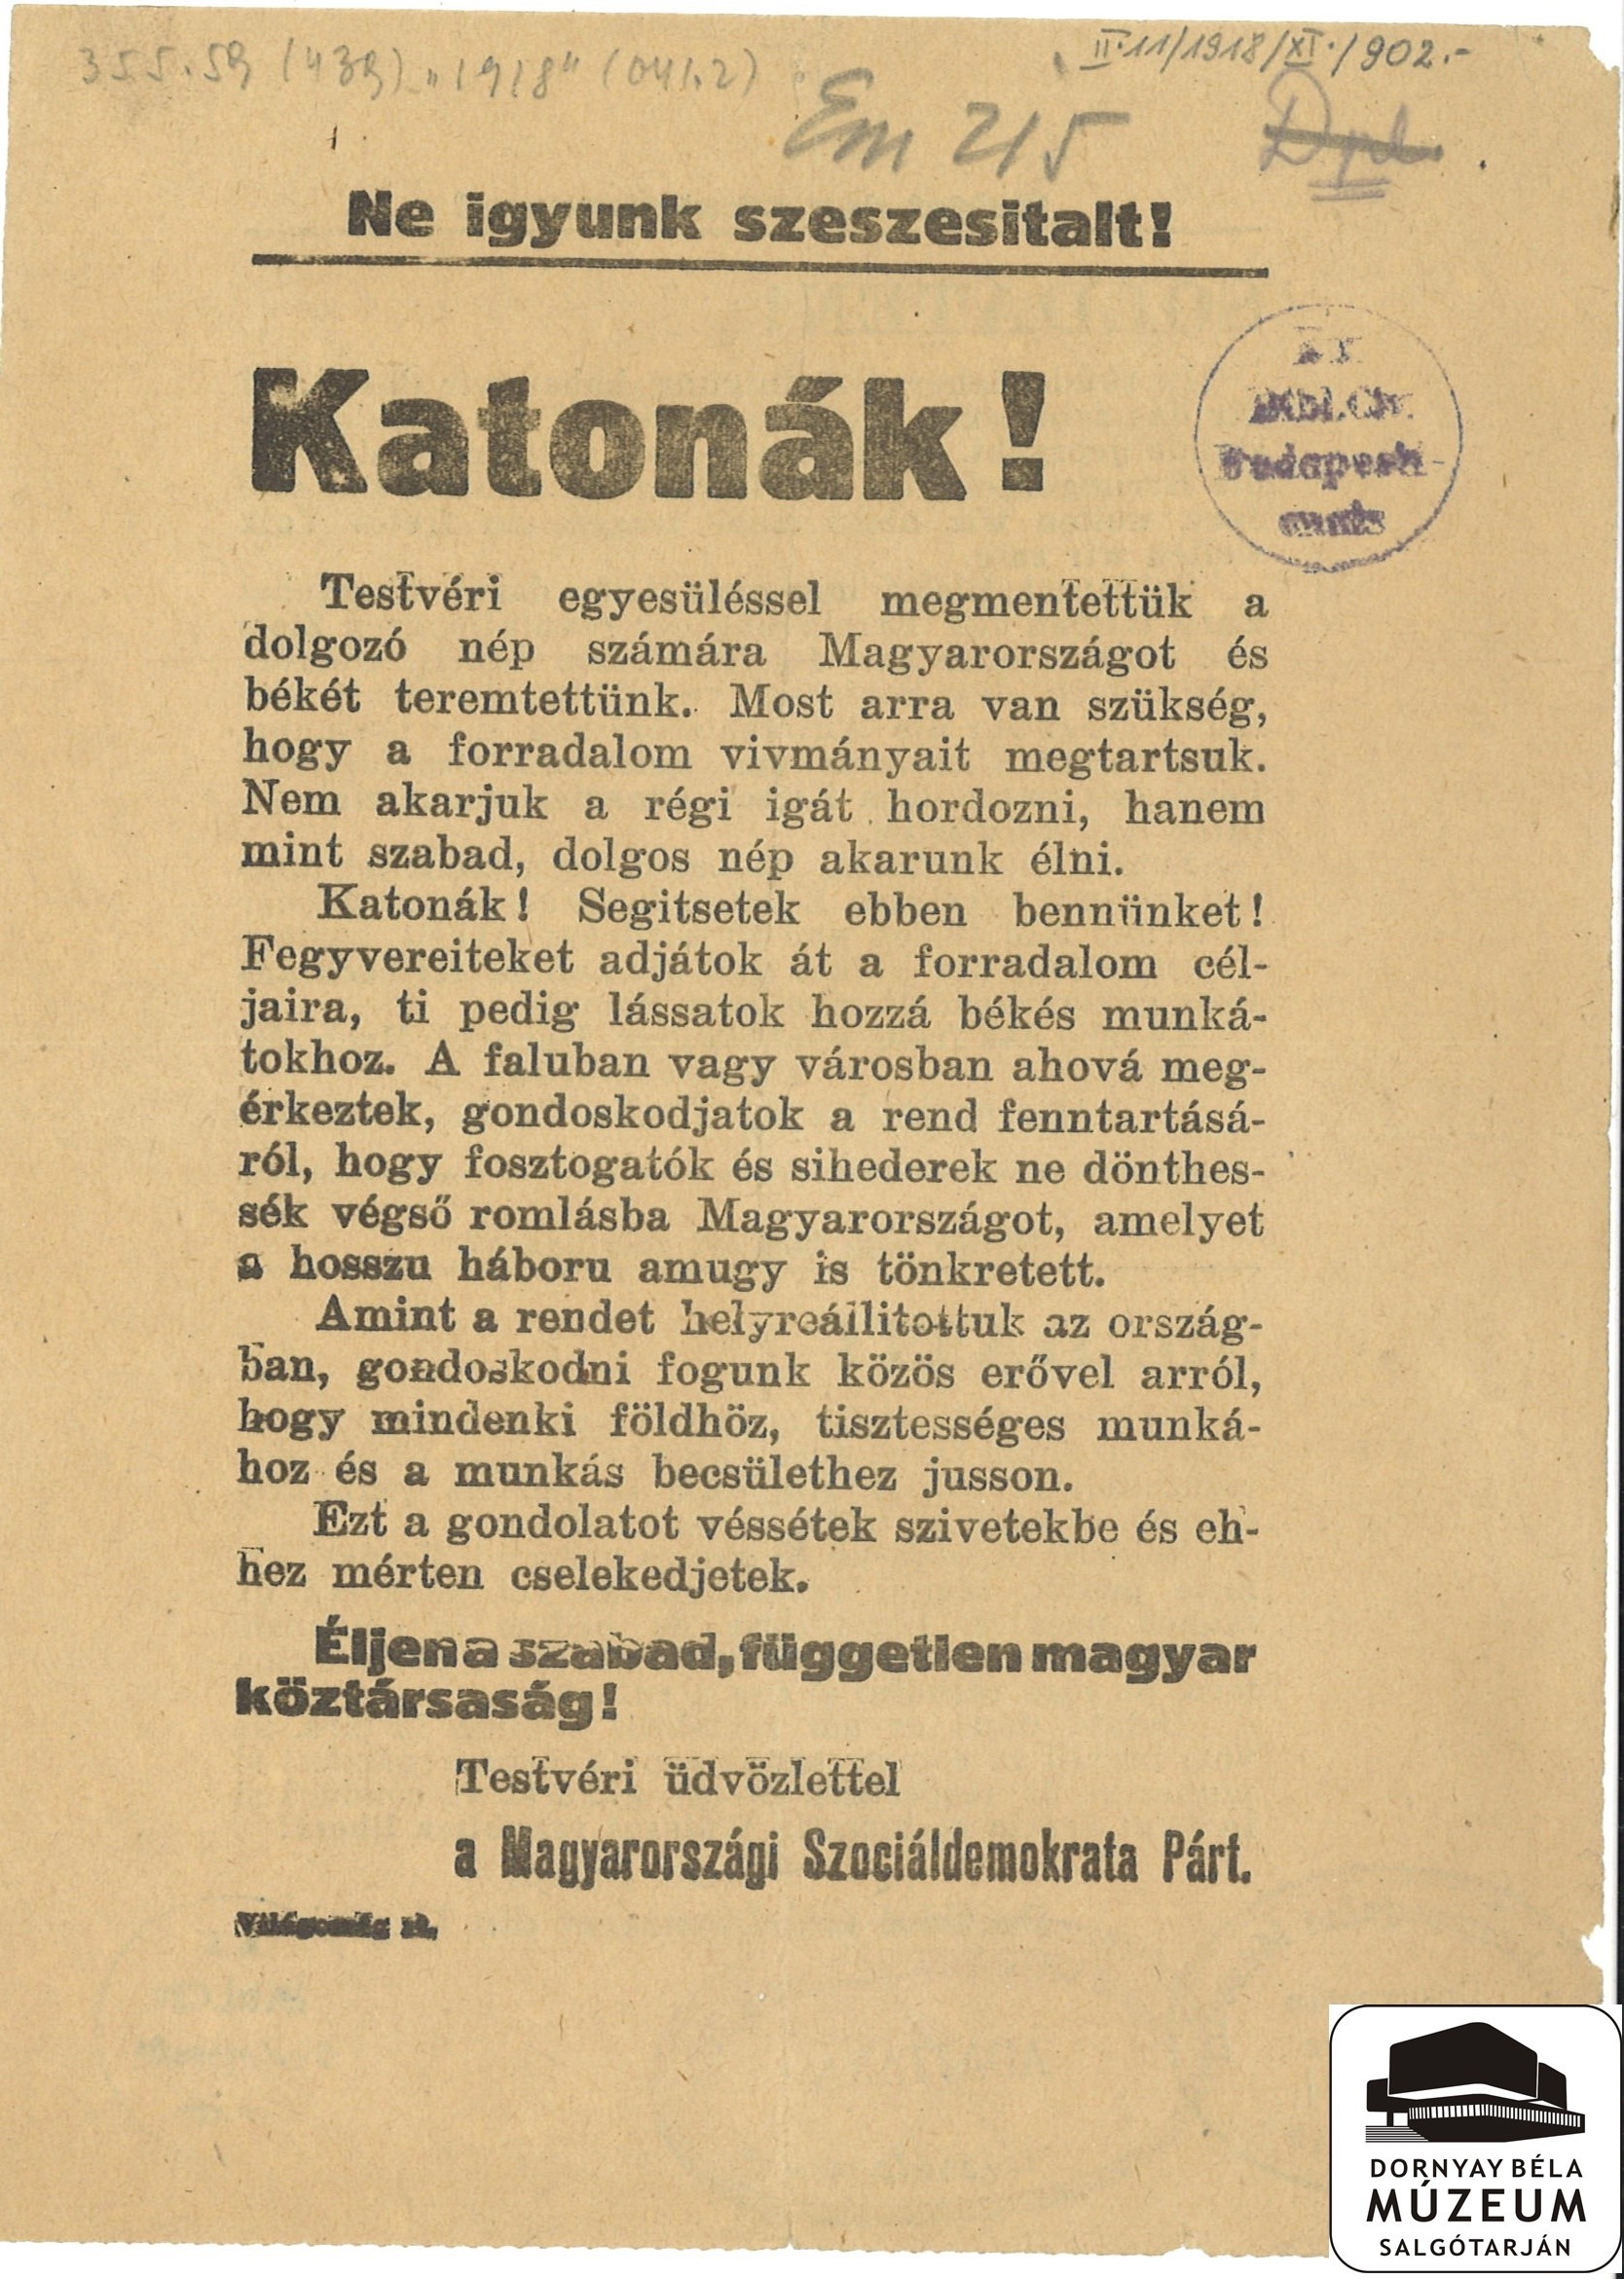 A Szociáldemokrata Párt felhívása a katonákhoz (Dornyay Béla Múzeum, Salgótarján CC BY-NC-SA)